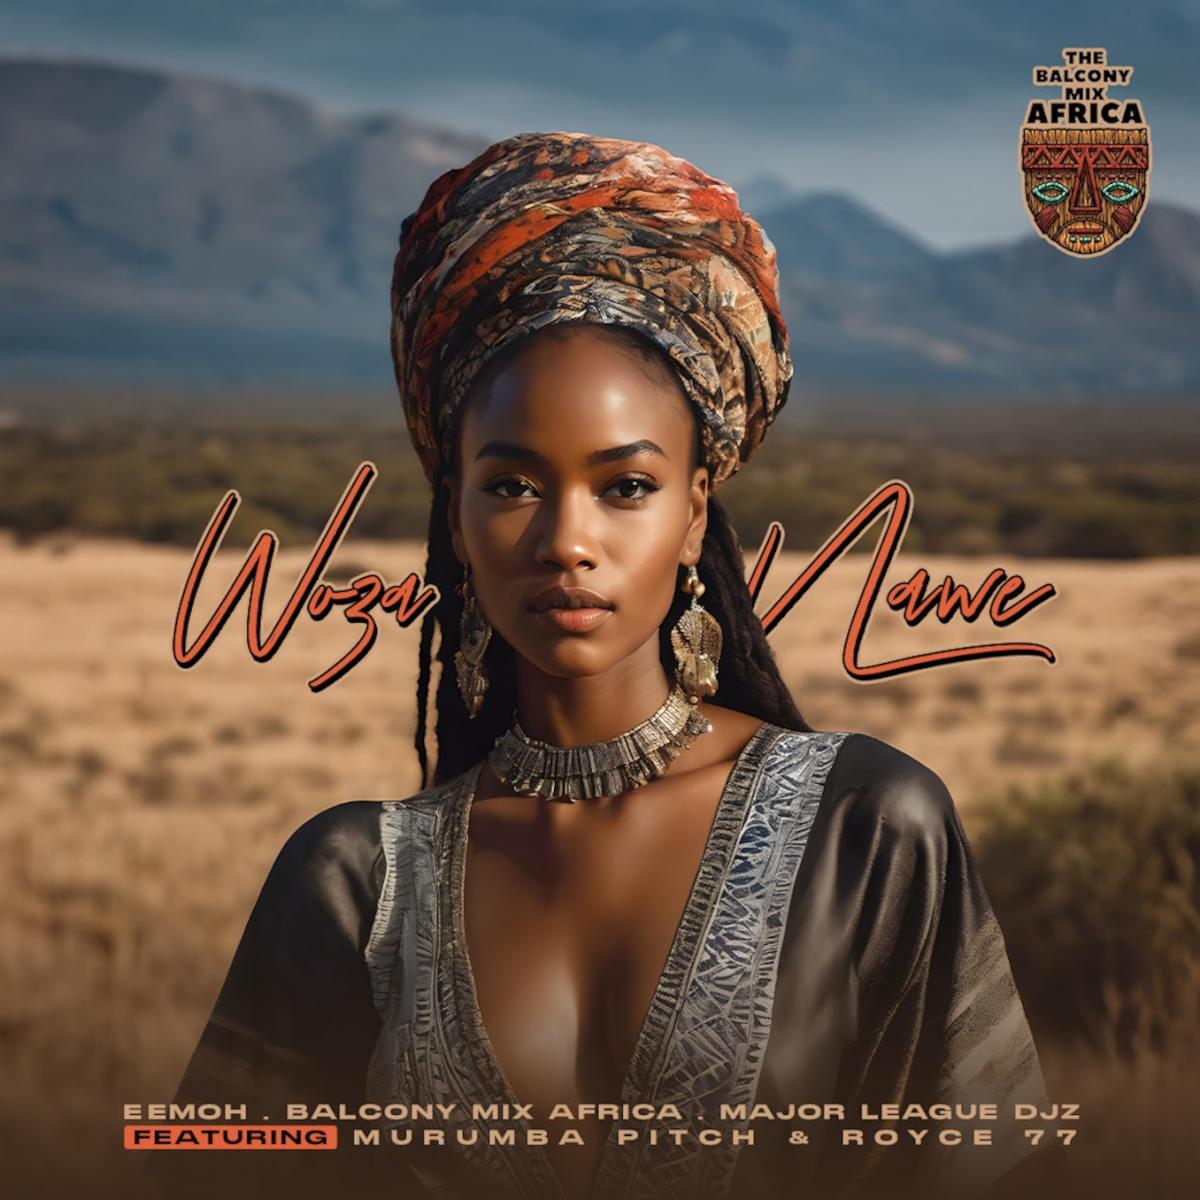 Eemoh, Balcony Mix Africa & Major League Djz – Woza Nawe (feat. Murumba Pitch & Royce77)